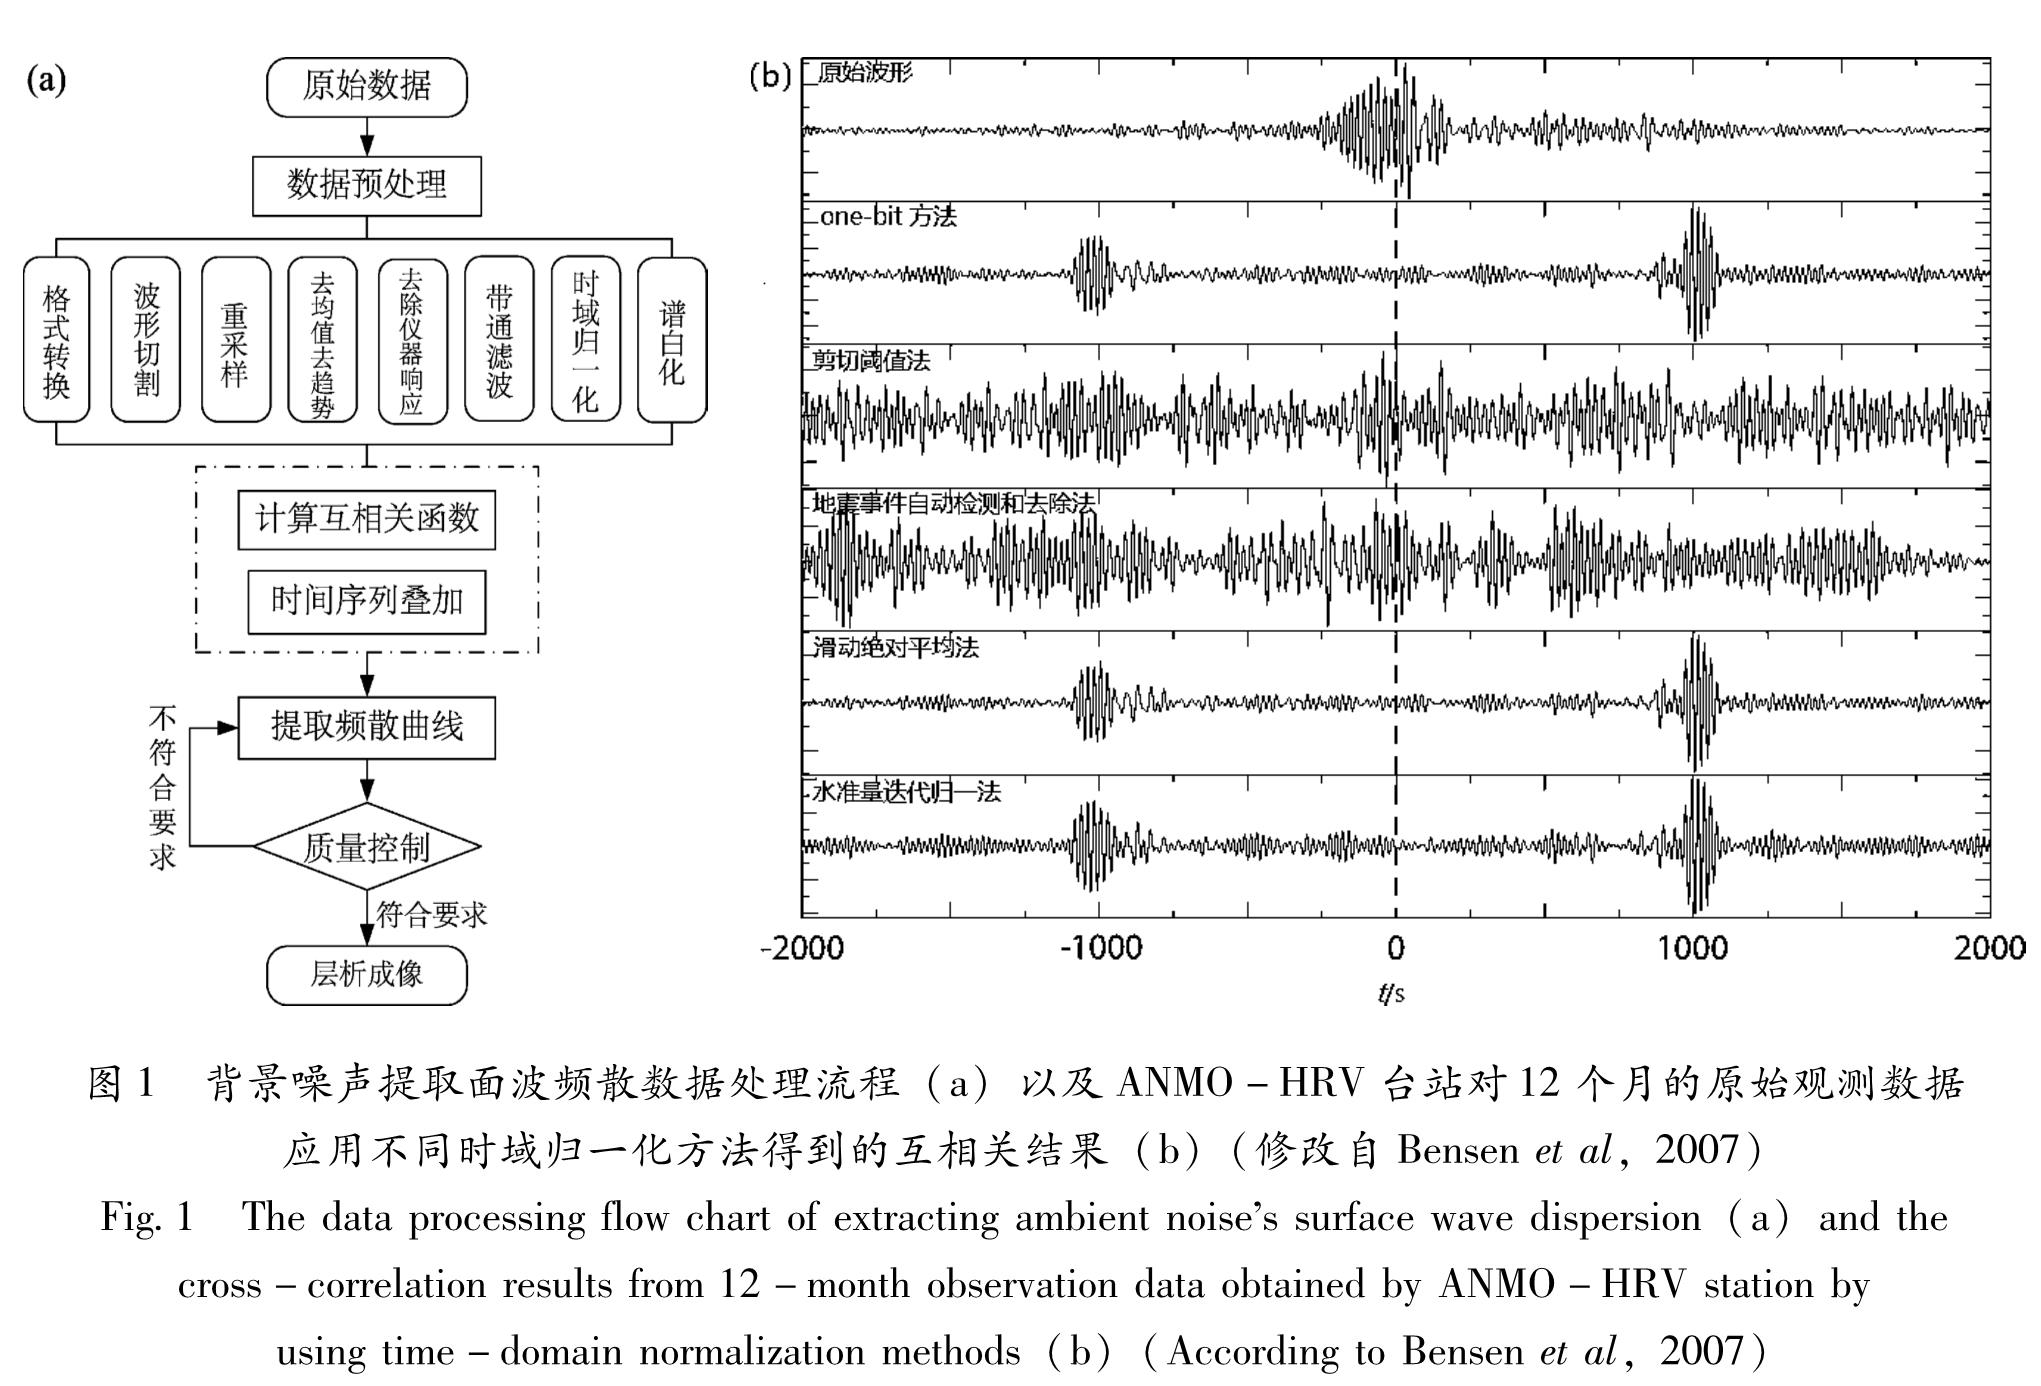 图1 背景噪声提取面波频散数据处理流程(a)以及ANMO-HRV台站对12个月的原始观测数据<br/>应用不同时域归一化方法得到的互相关结果(b)(修改自Bensen et al,2007)<br/>Fig.1 The data processing flow chart of extracting ambient noise's surface wave dispersion(a)and the cross-correlation results from 12-month observation data obtained by ANMO-HRV station by using time-domain normalization methods(b)(According to Bensen et al,2007)